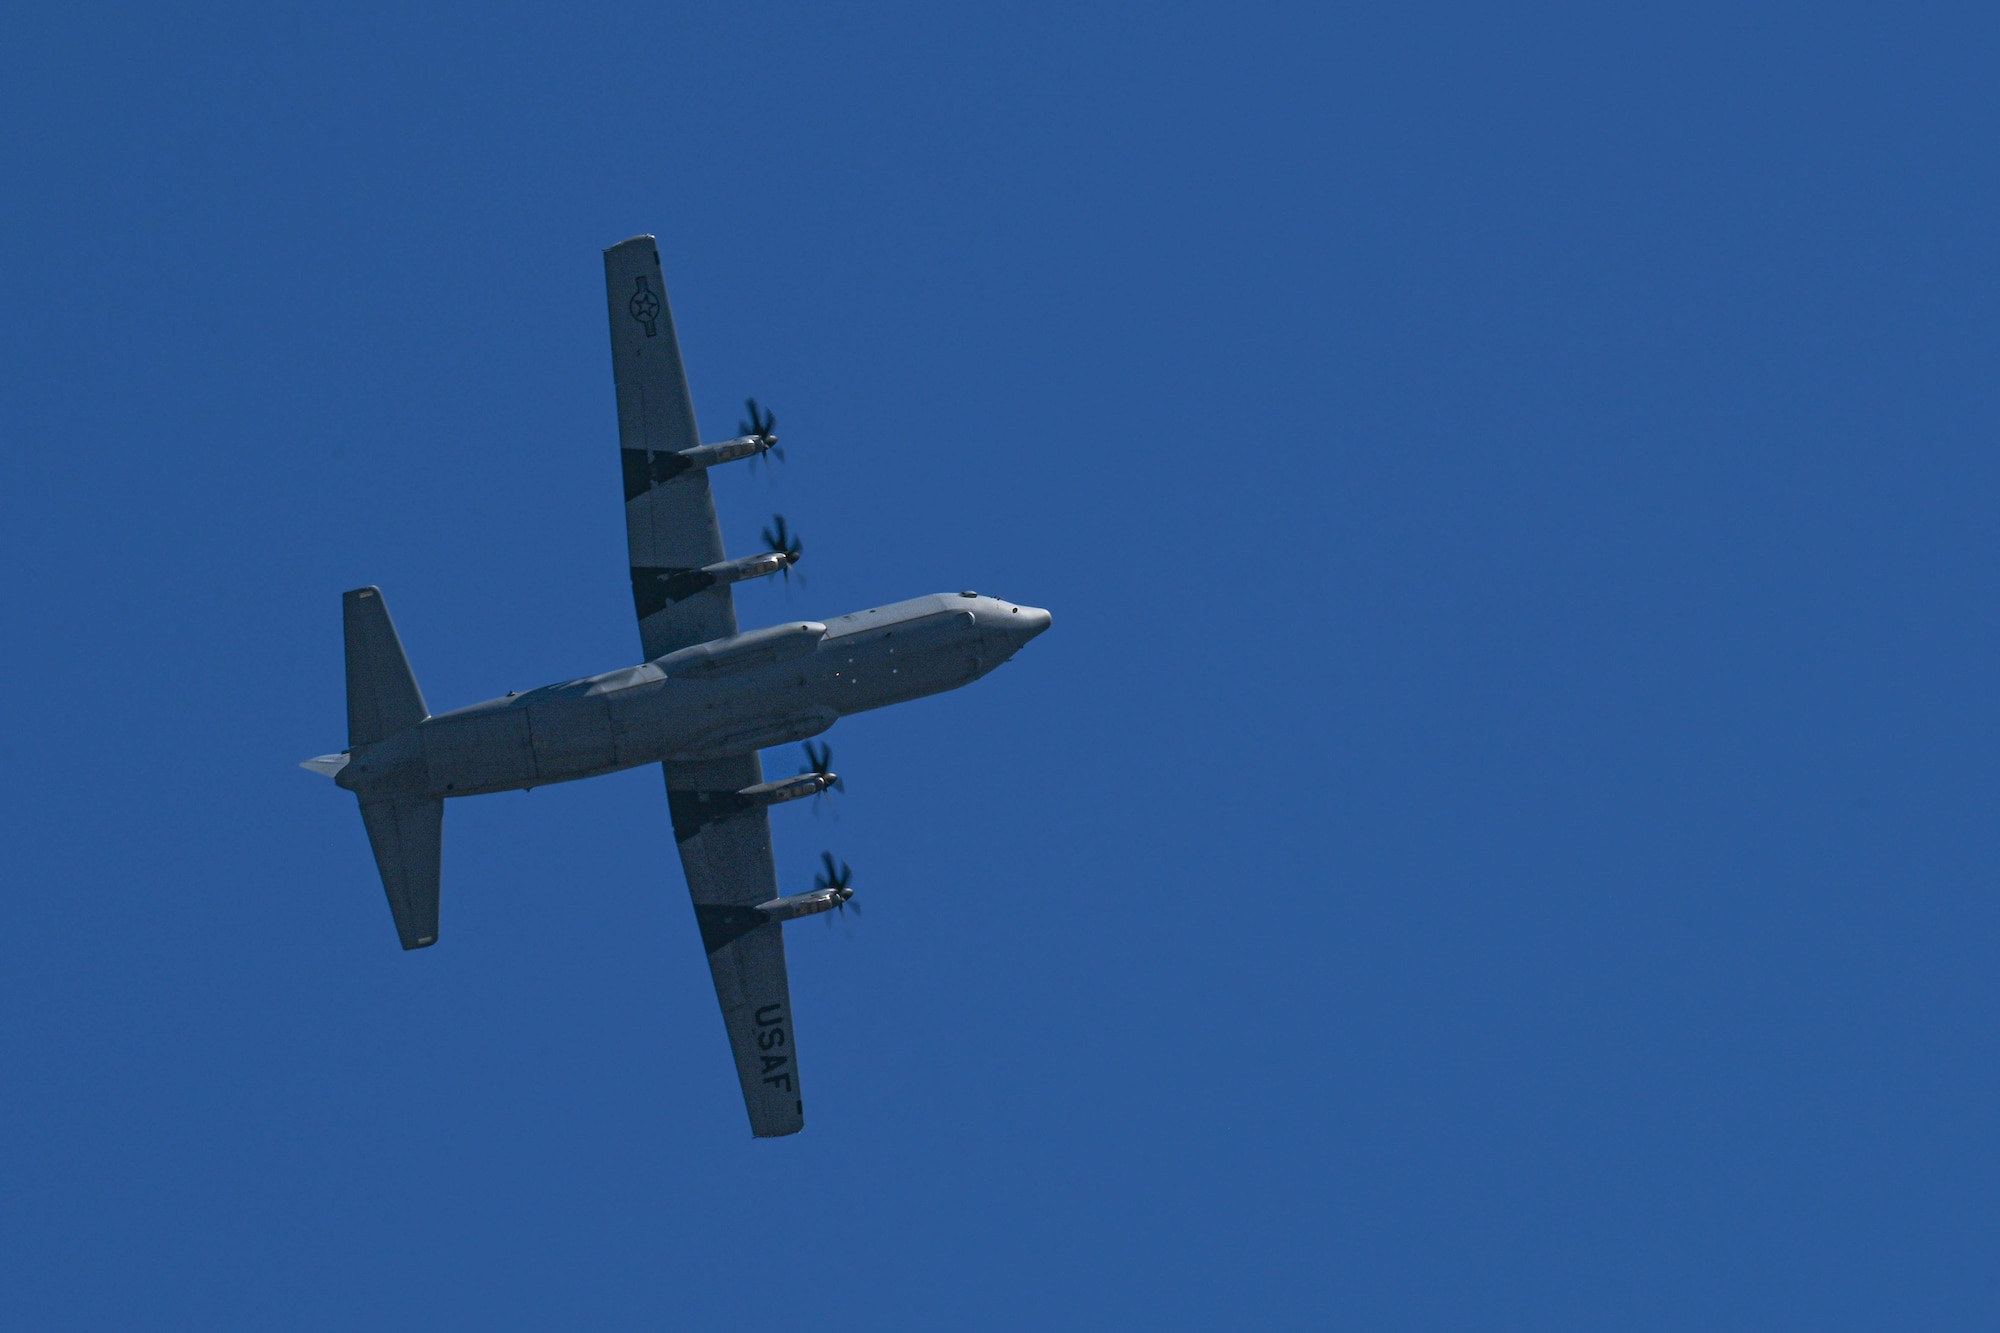 A C-130 flies in the sky.